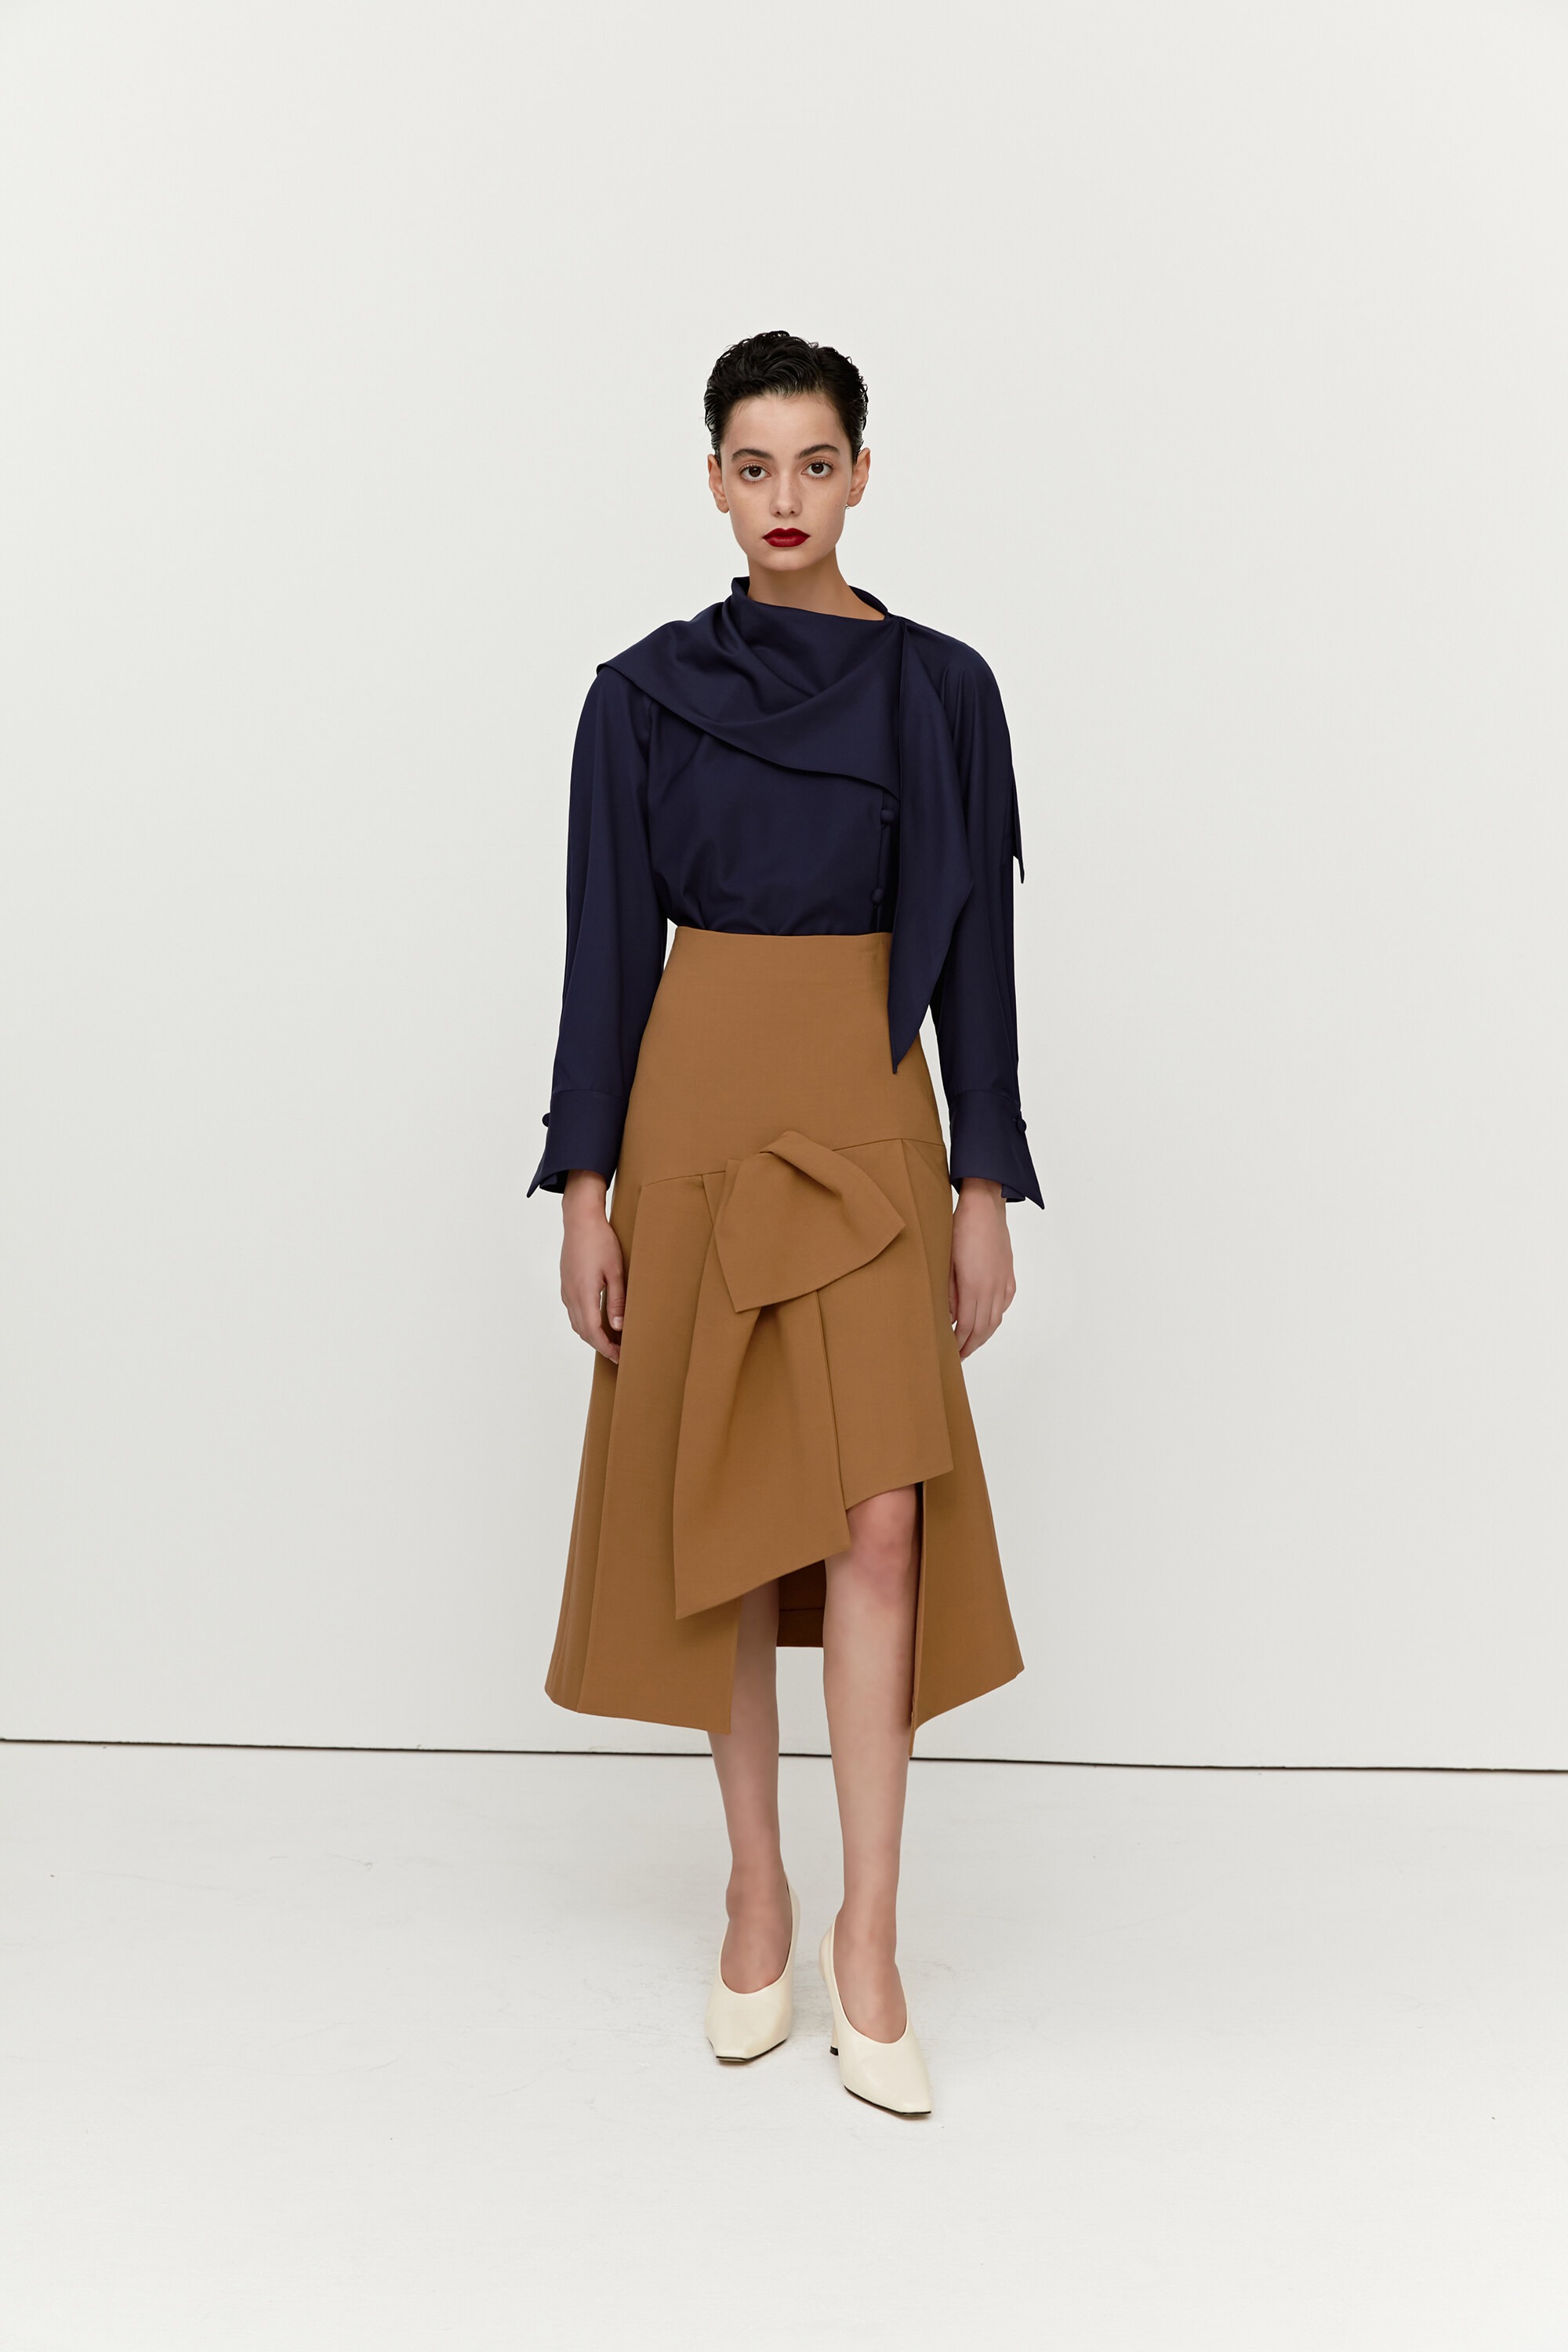 [Custom Order] Tailored Bow-Trim Skirt